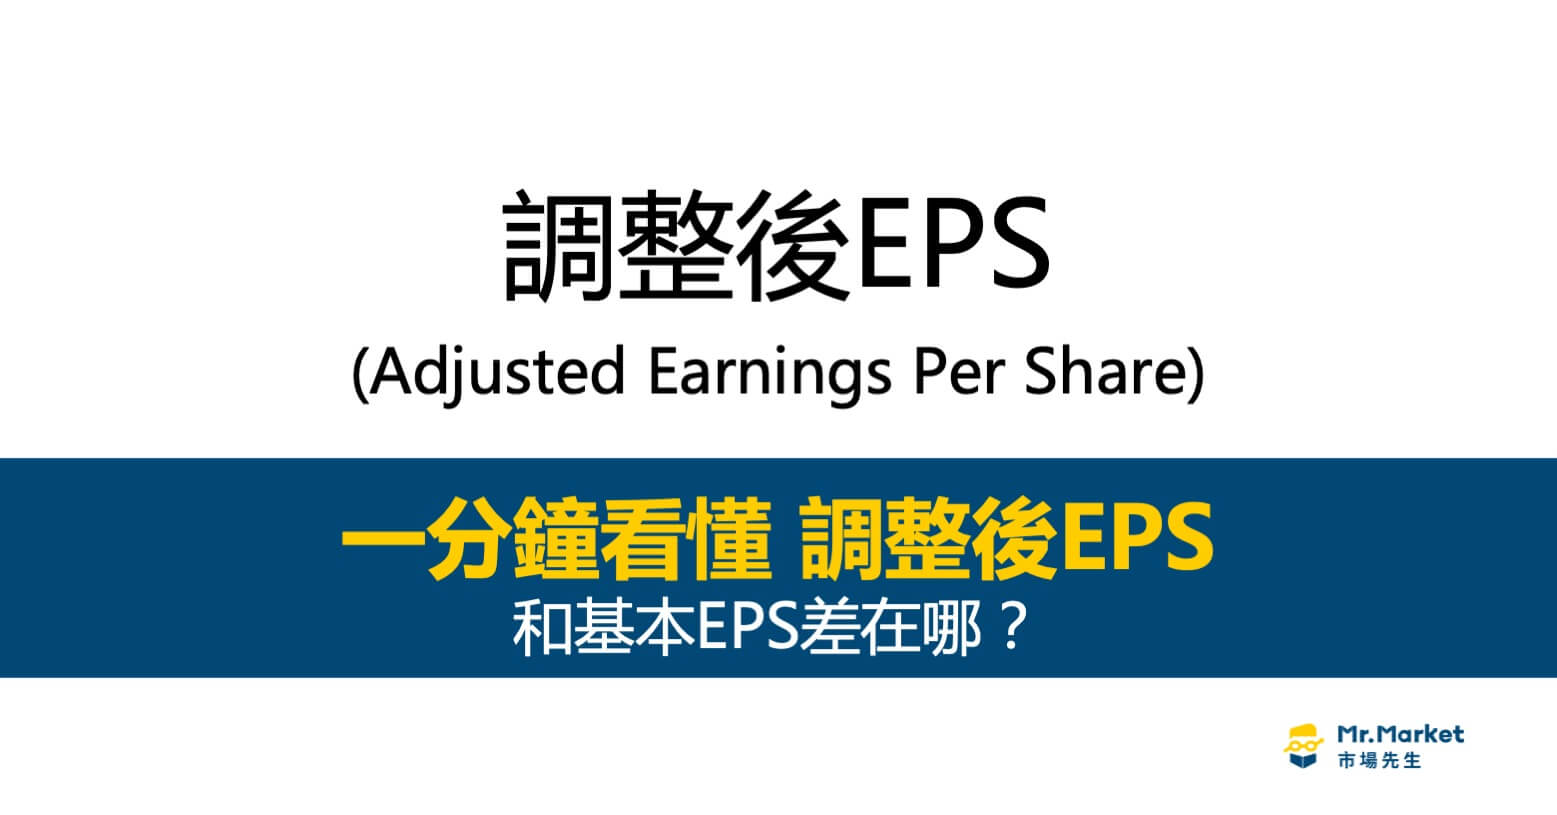 調整後EPS是什麼意思？和基本EPS差在哪？